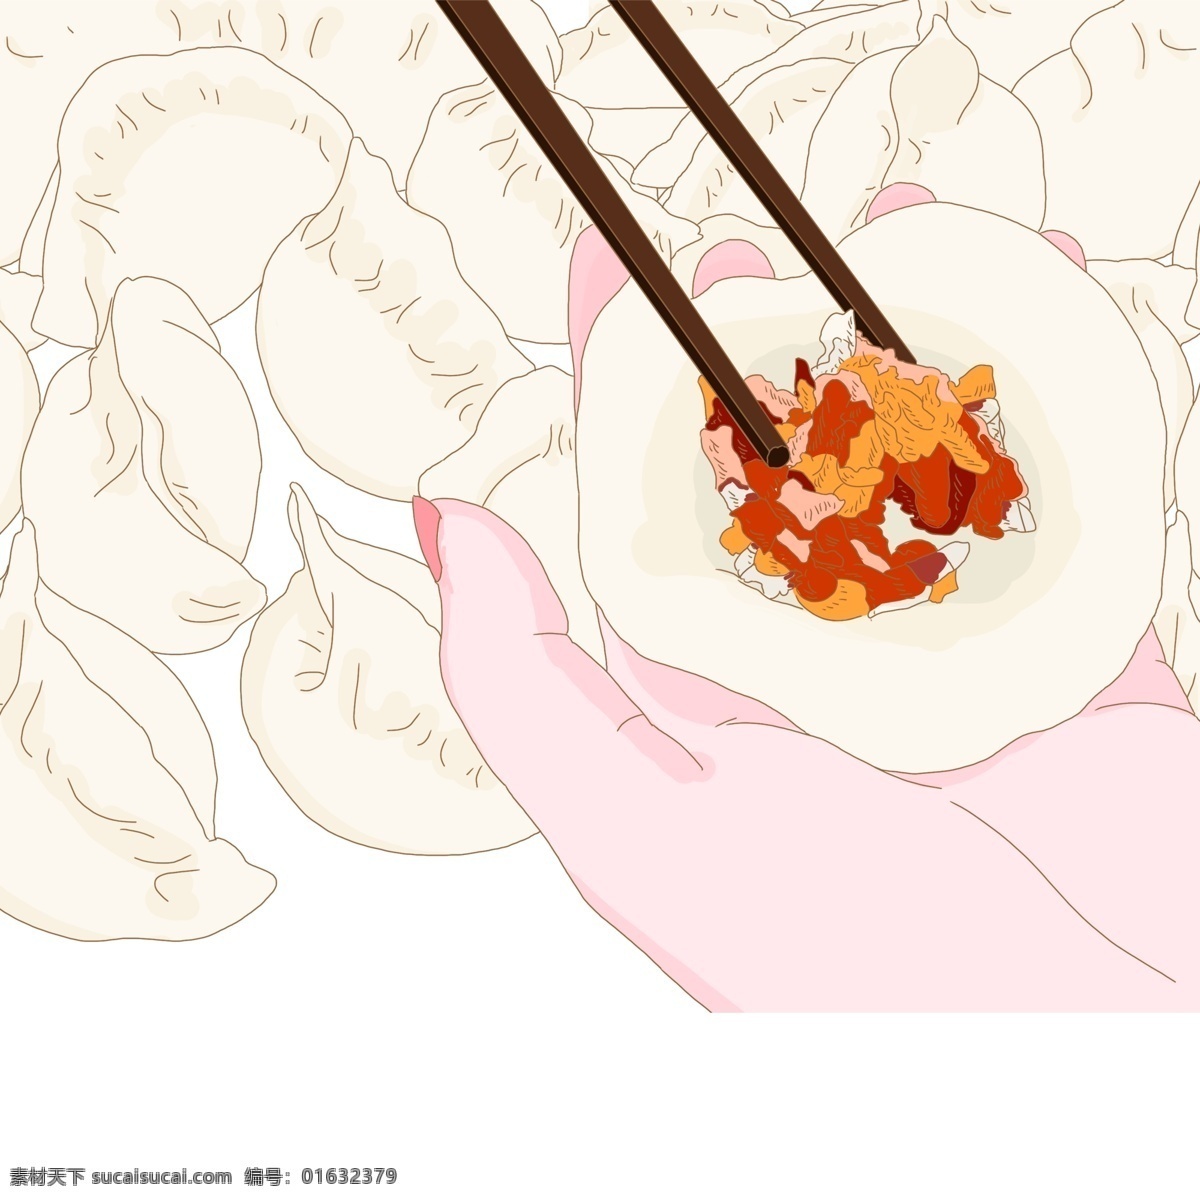 手绘 冬至 包 饺子 创意设计 卡通手绘 插画 二十四节气 筷子 节气 包饺子